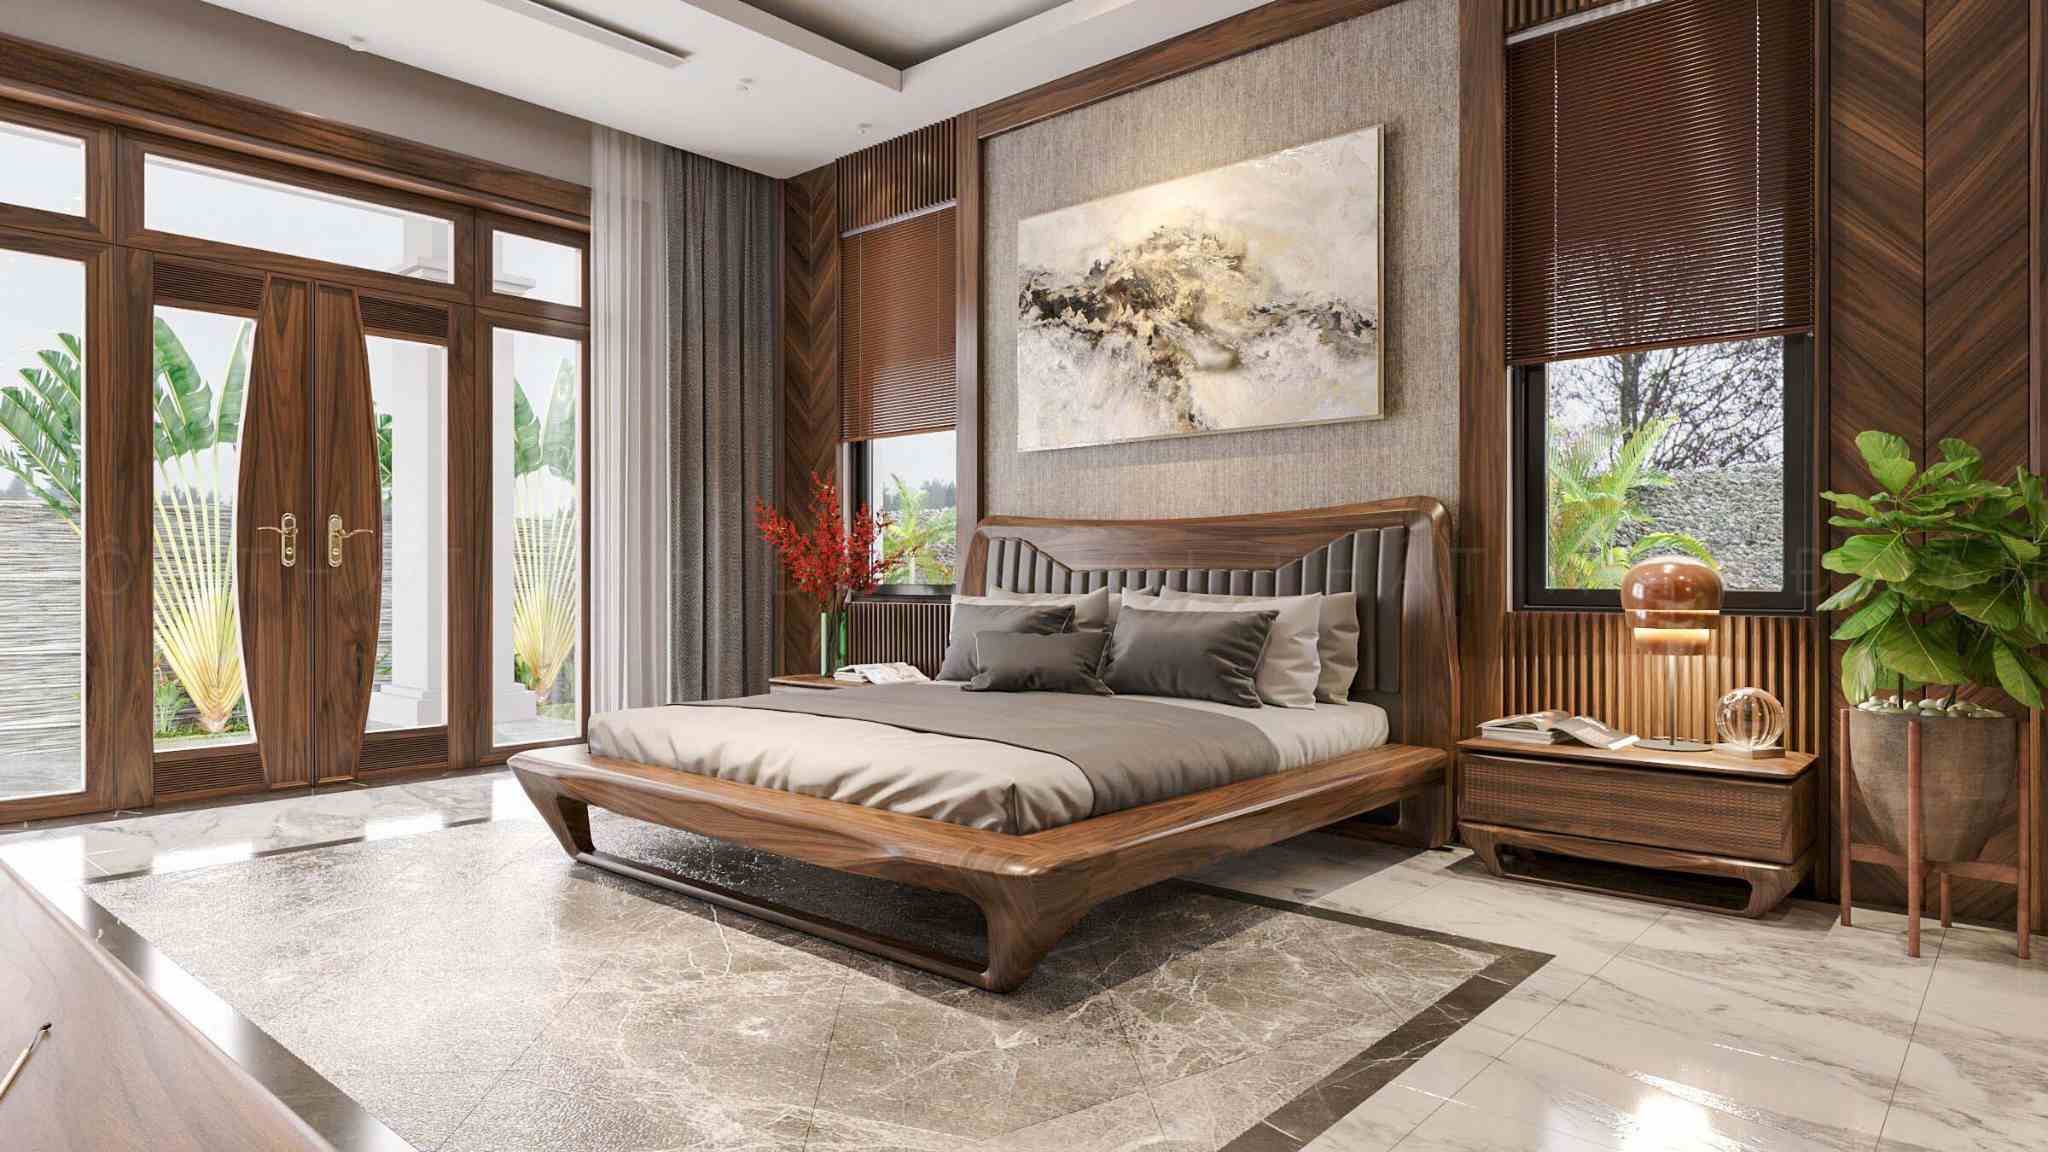 Thiết kế giường tủ, bàn gỗ cần có sự hài hoà về màu sắc và tính thẩm mỹ 